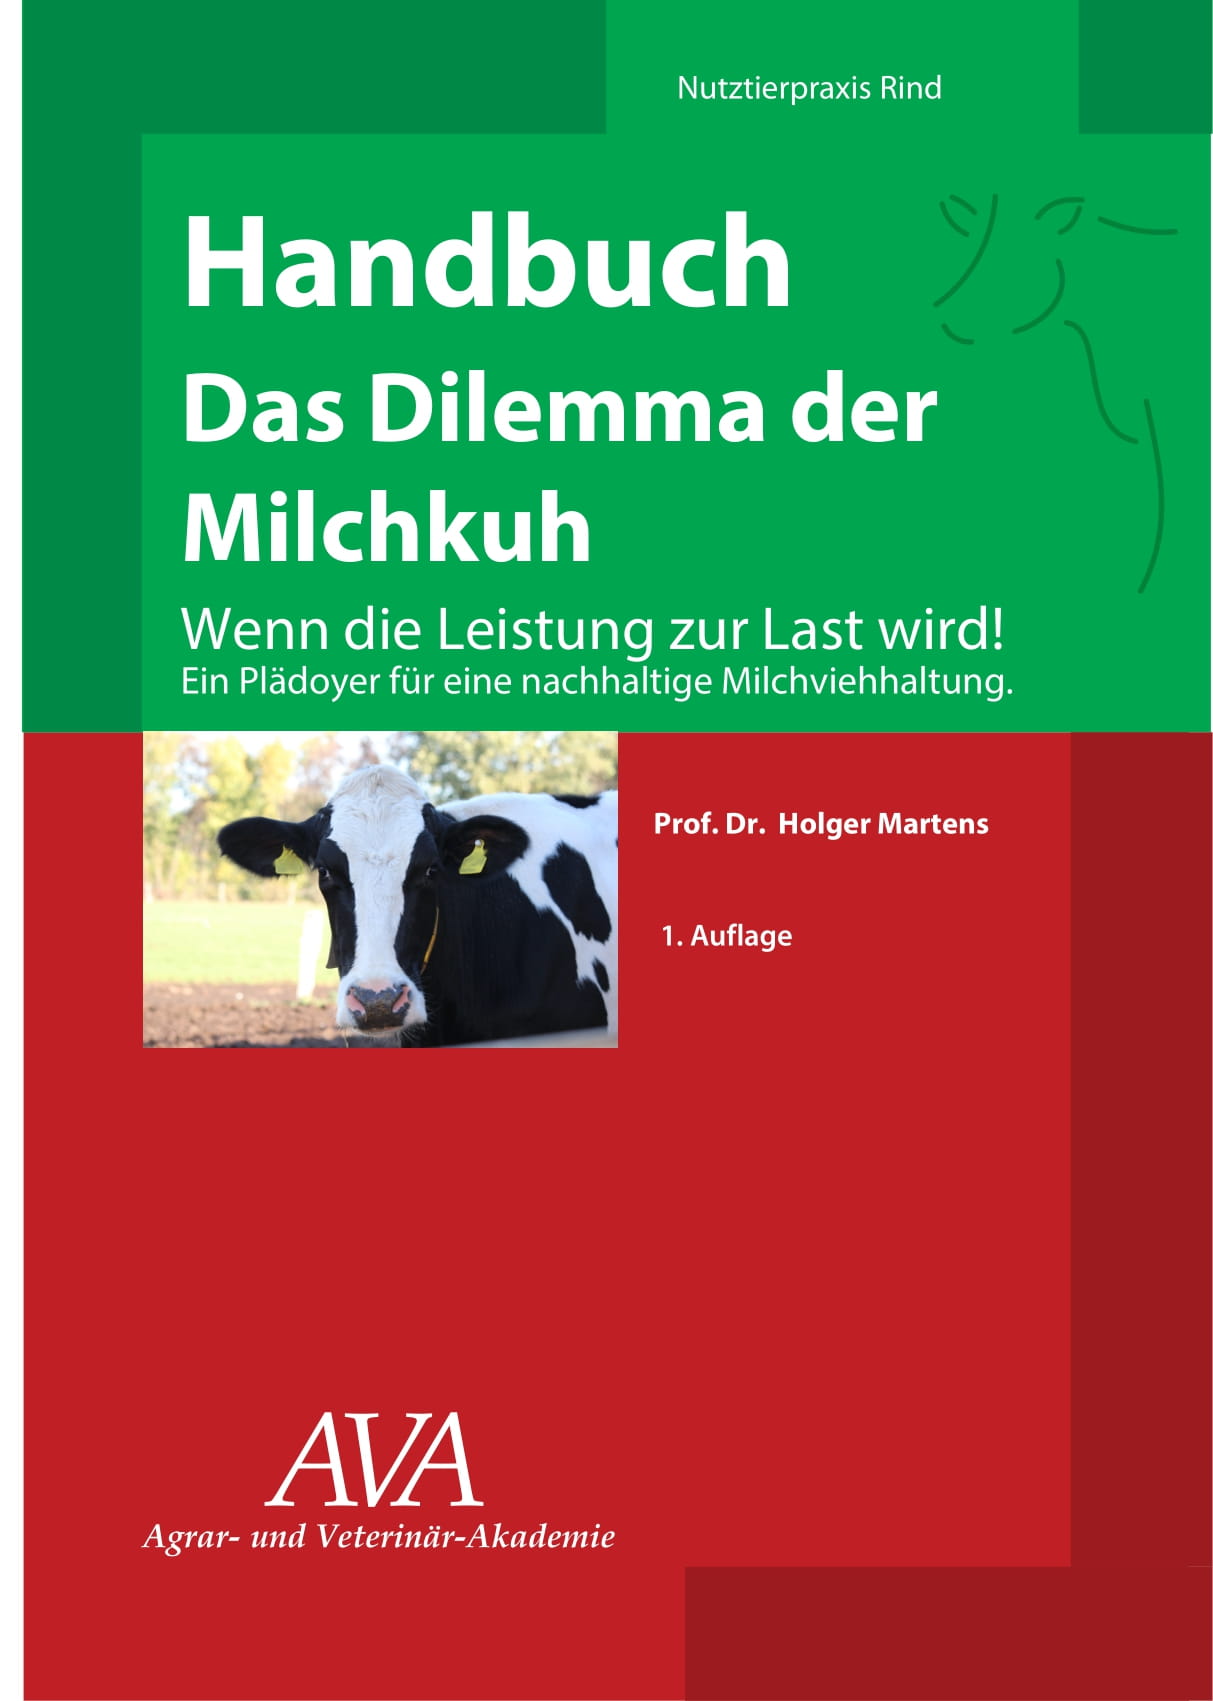 das 110-seitige Buch sollte jeder Tierarzt, Landwirt, Berater und Fach-Studierende lesen | Freie-Pressemitteilungen.de